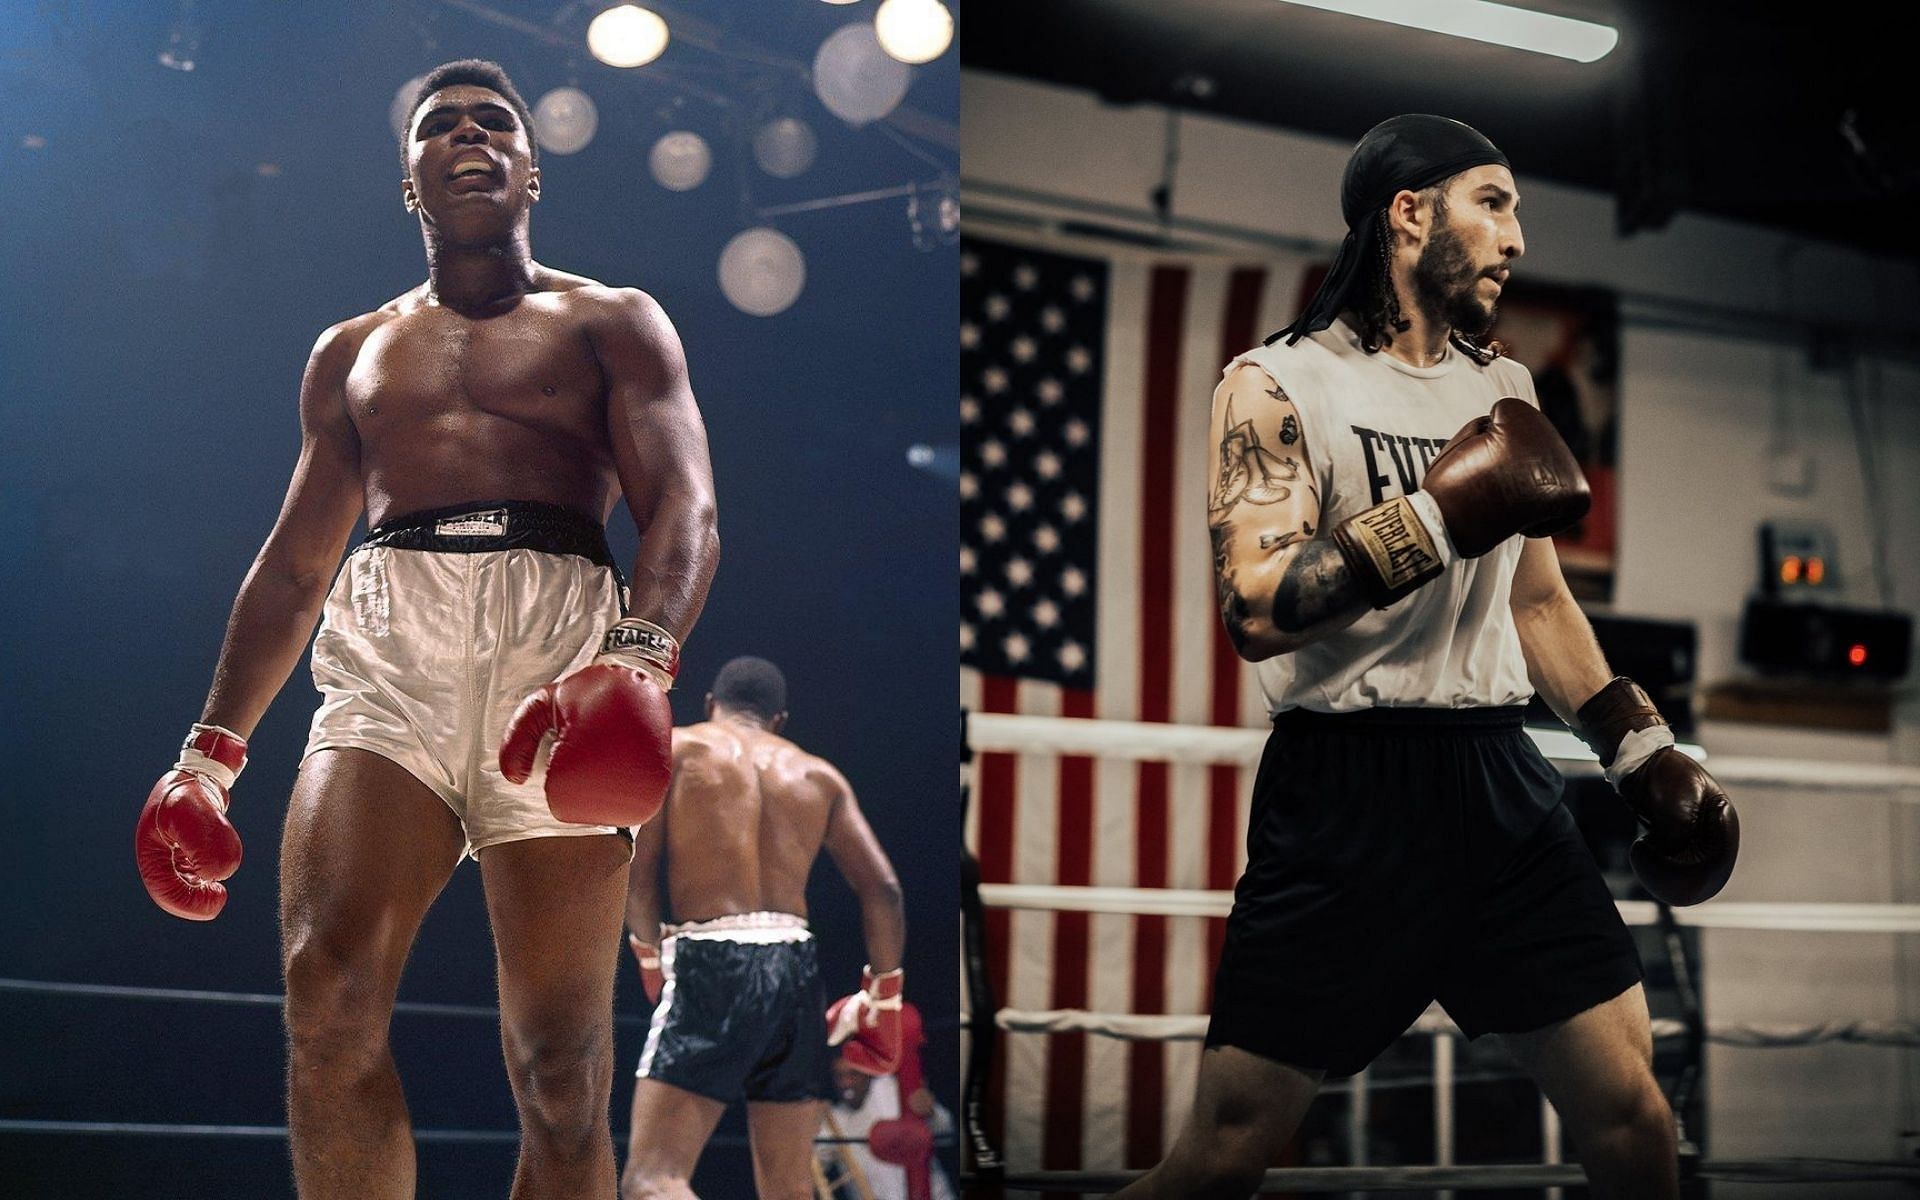 Muhammad Ali (left) and Nico Ali Walsh (right) [Image Courtesy: @nicoaliwalsh and @muhammadali on Instagram]